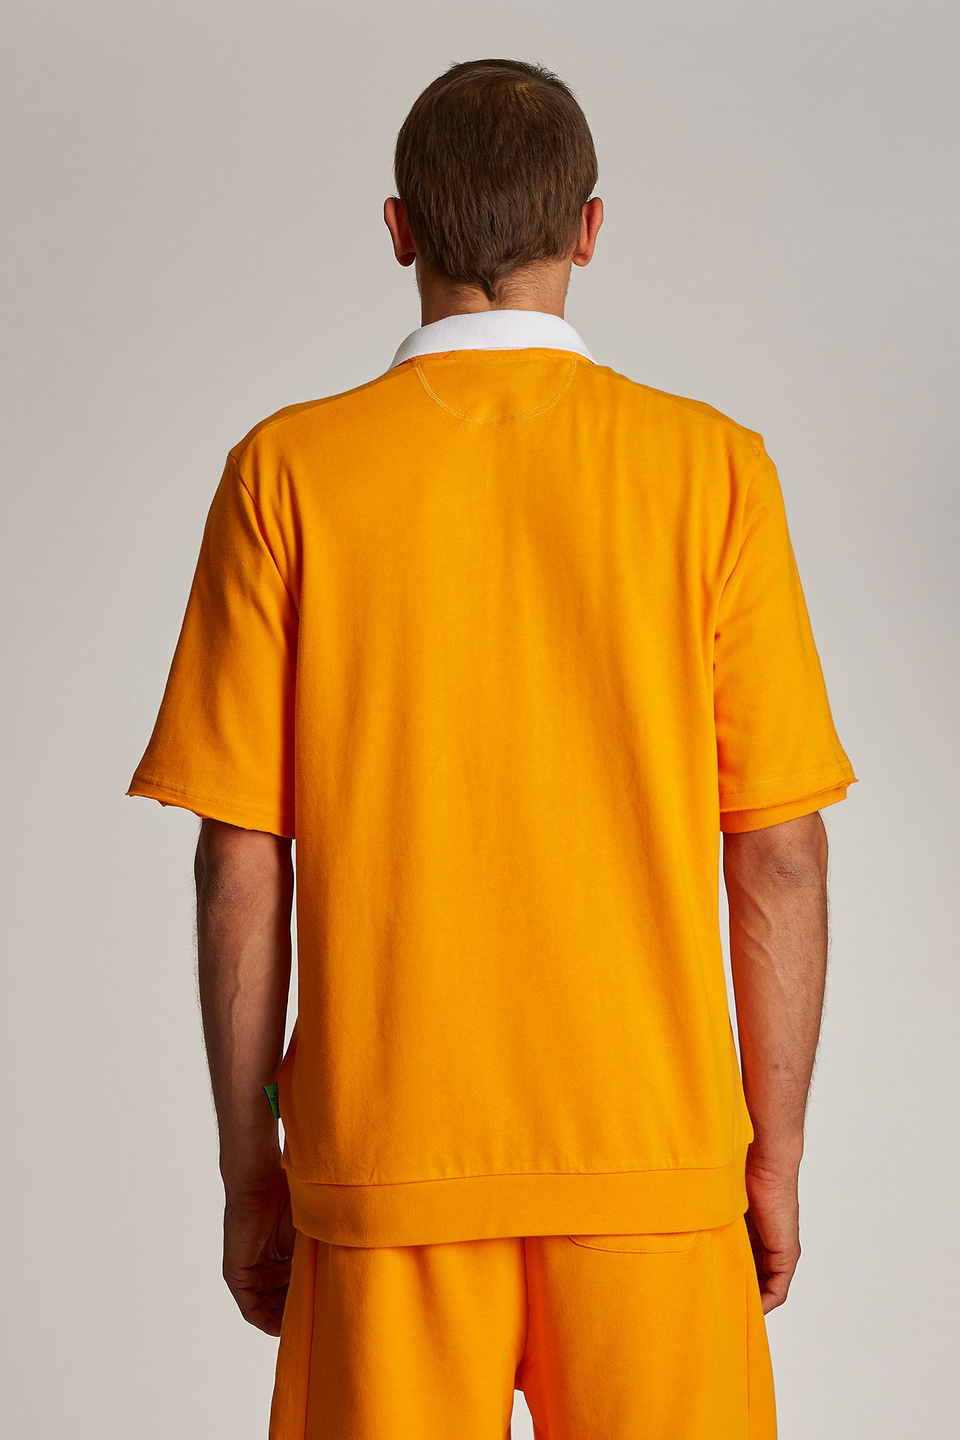 Herren-Poloshirt mit kurzem Arm und einem Kragen in Kontrastoptik, oversized Modell | La Martina - Official Online Shop